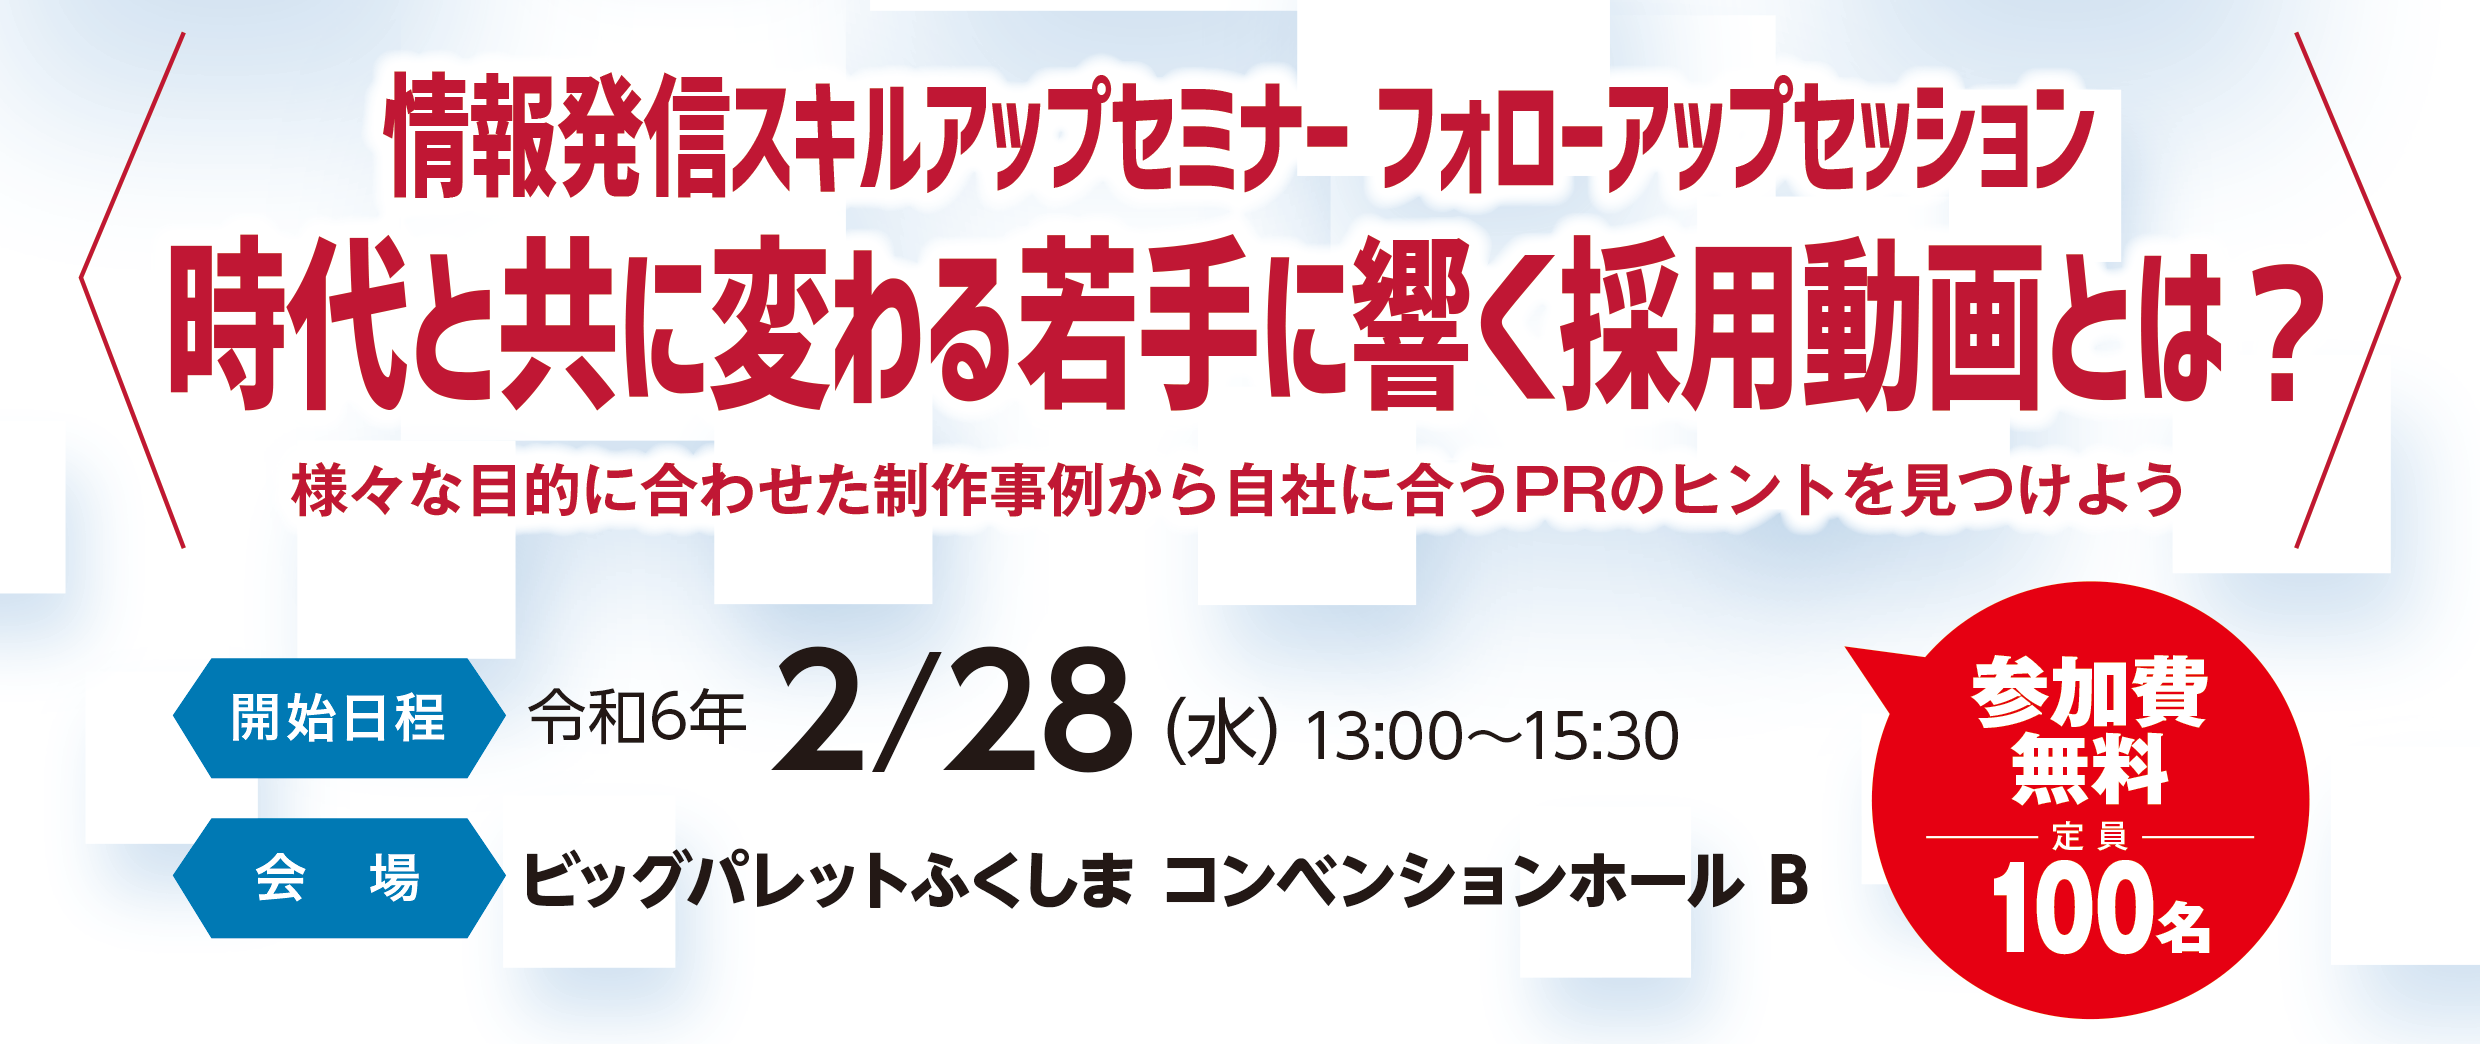 fukushima_seminar240228.png